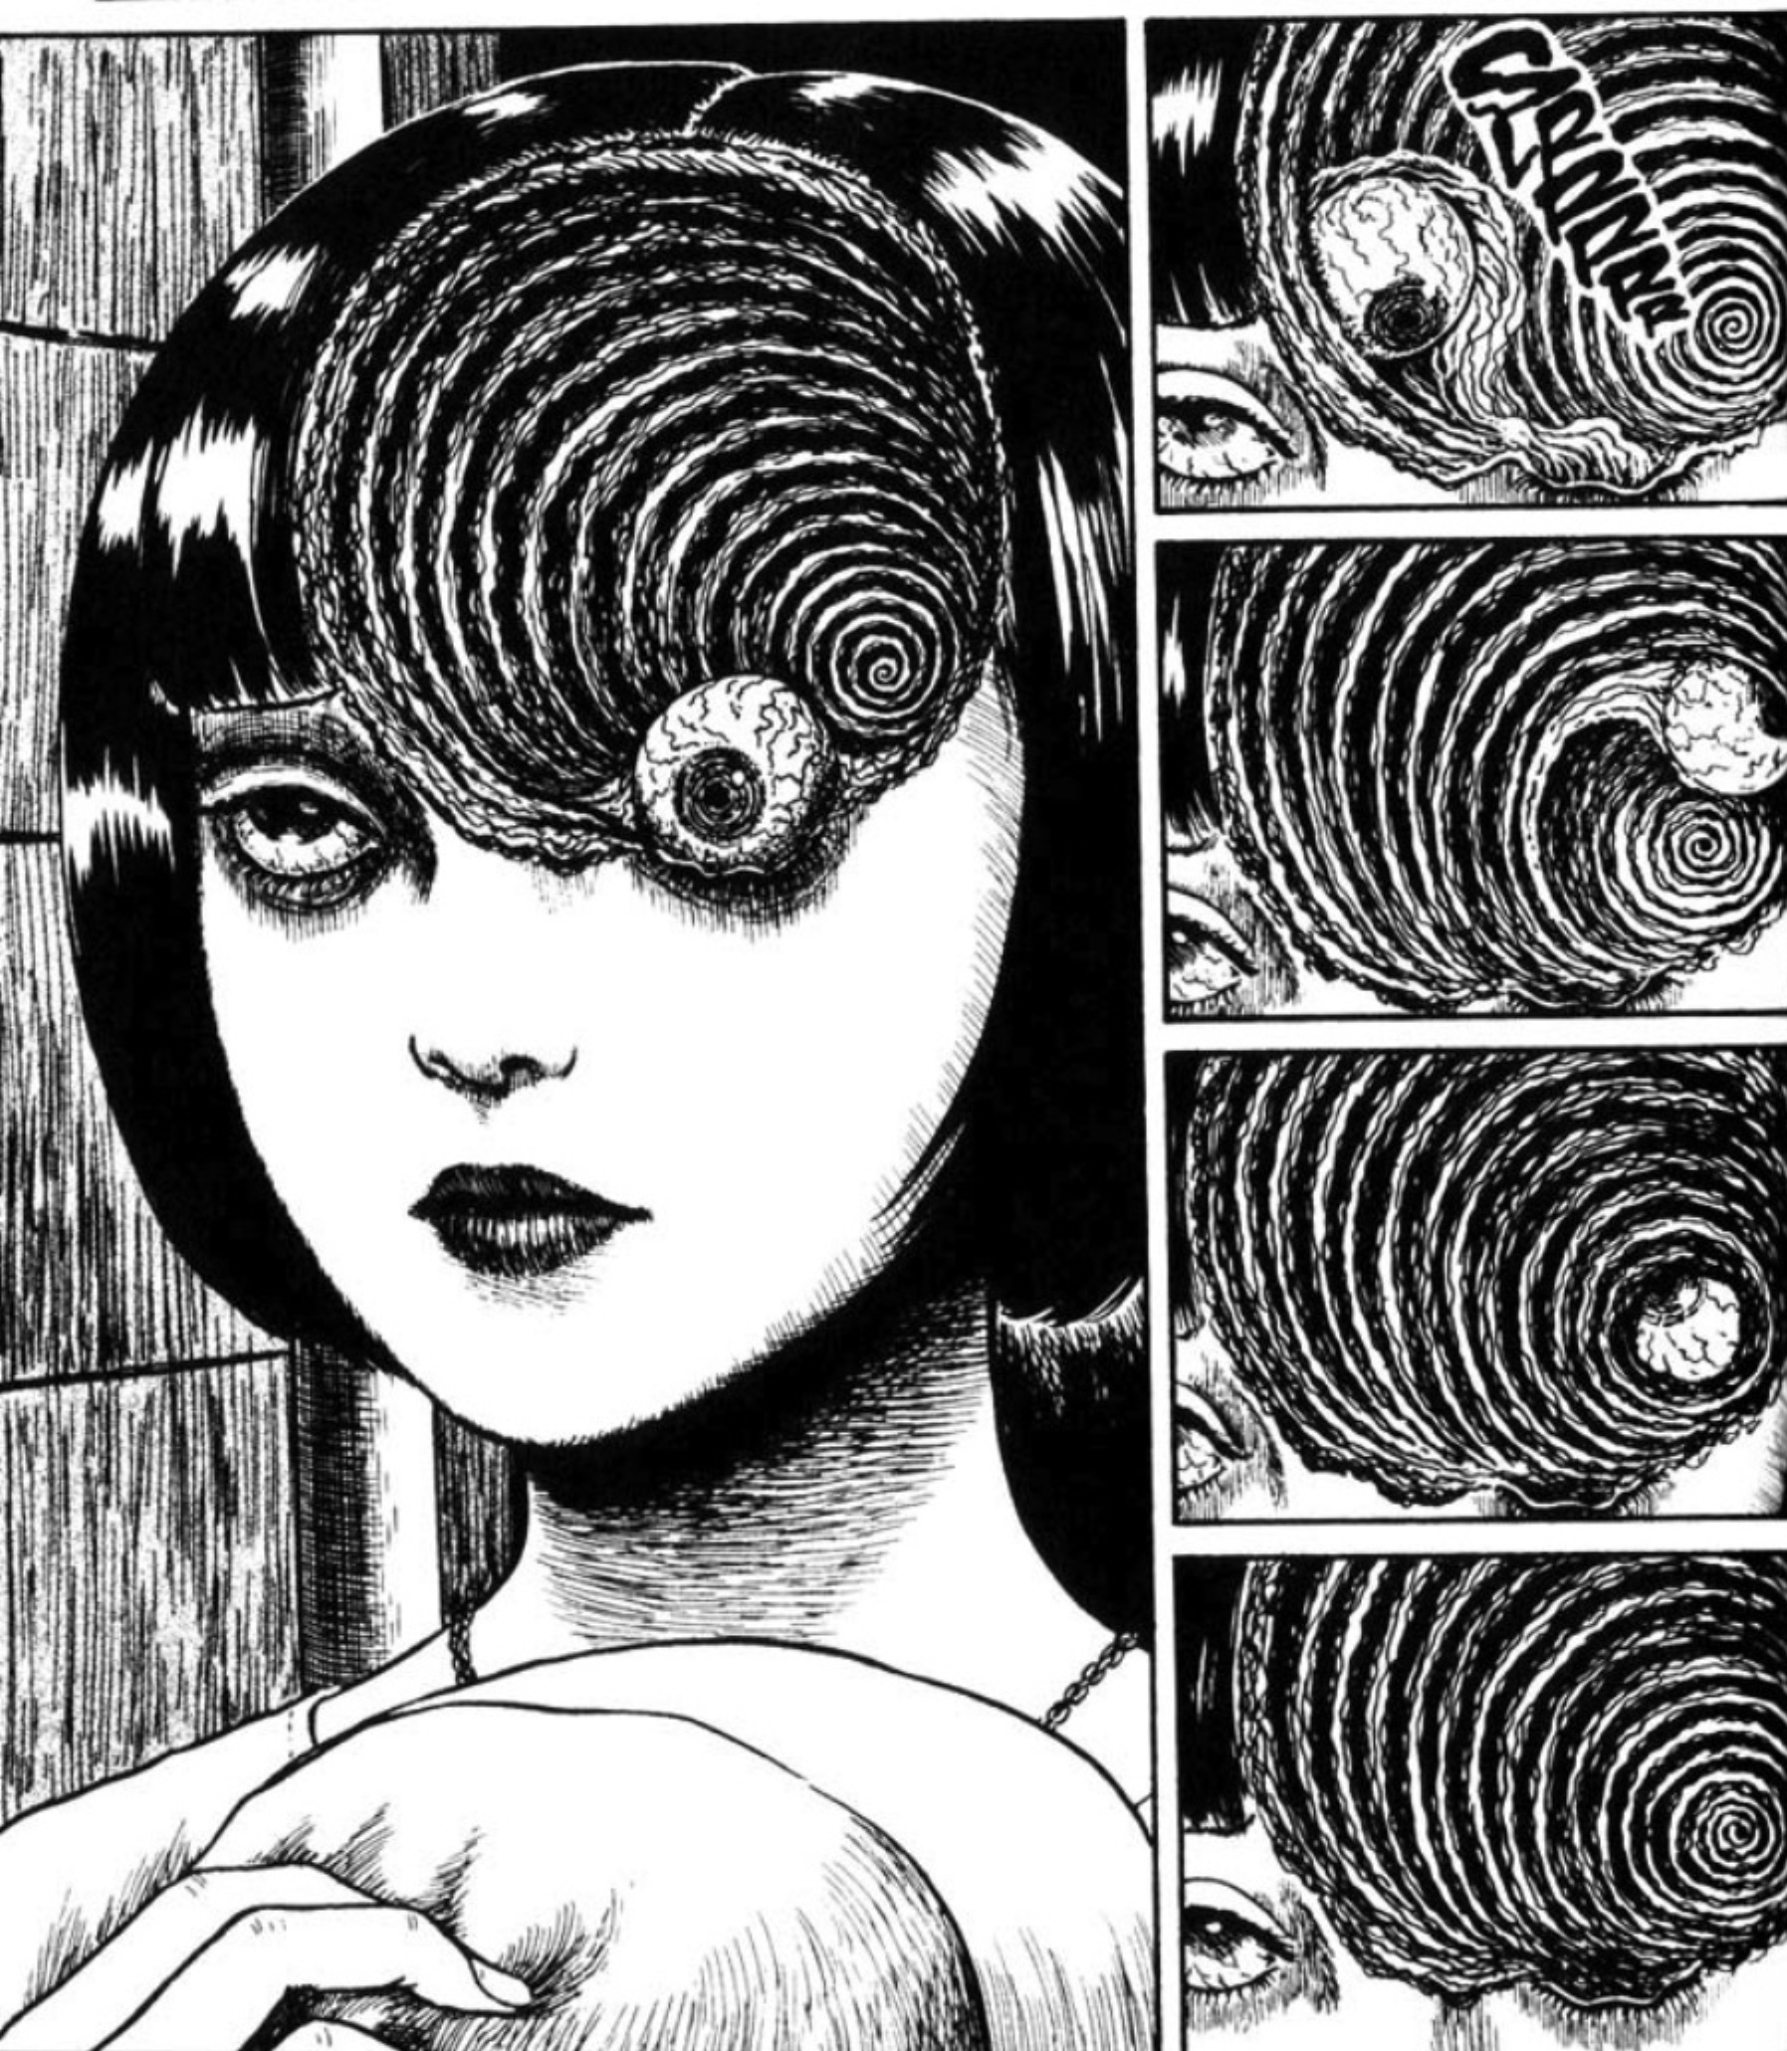 El eroguro tiene hoy potentes cultores. Página de ‘Uzumaki’, manga de Junji Ito.